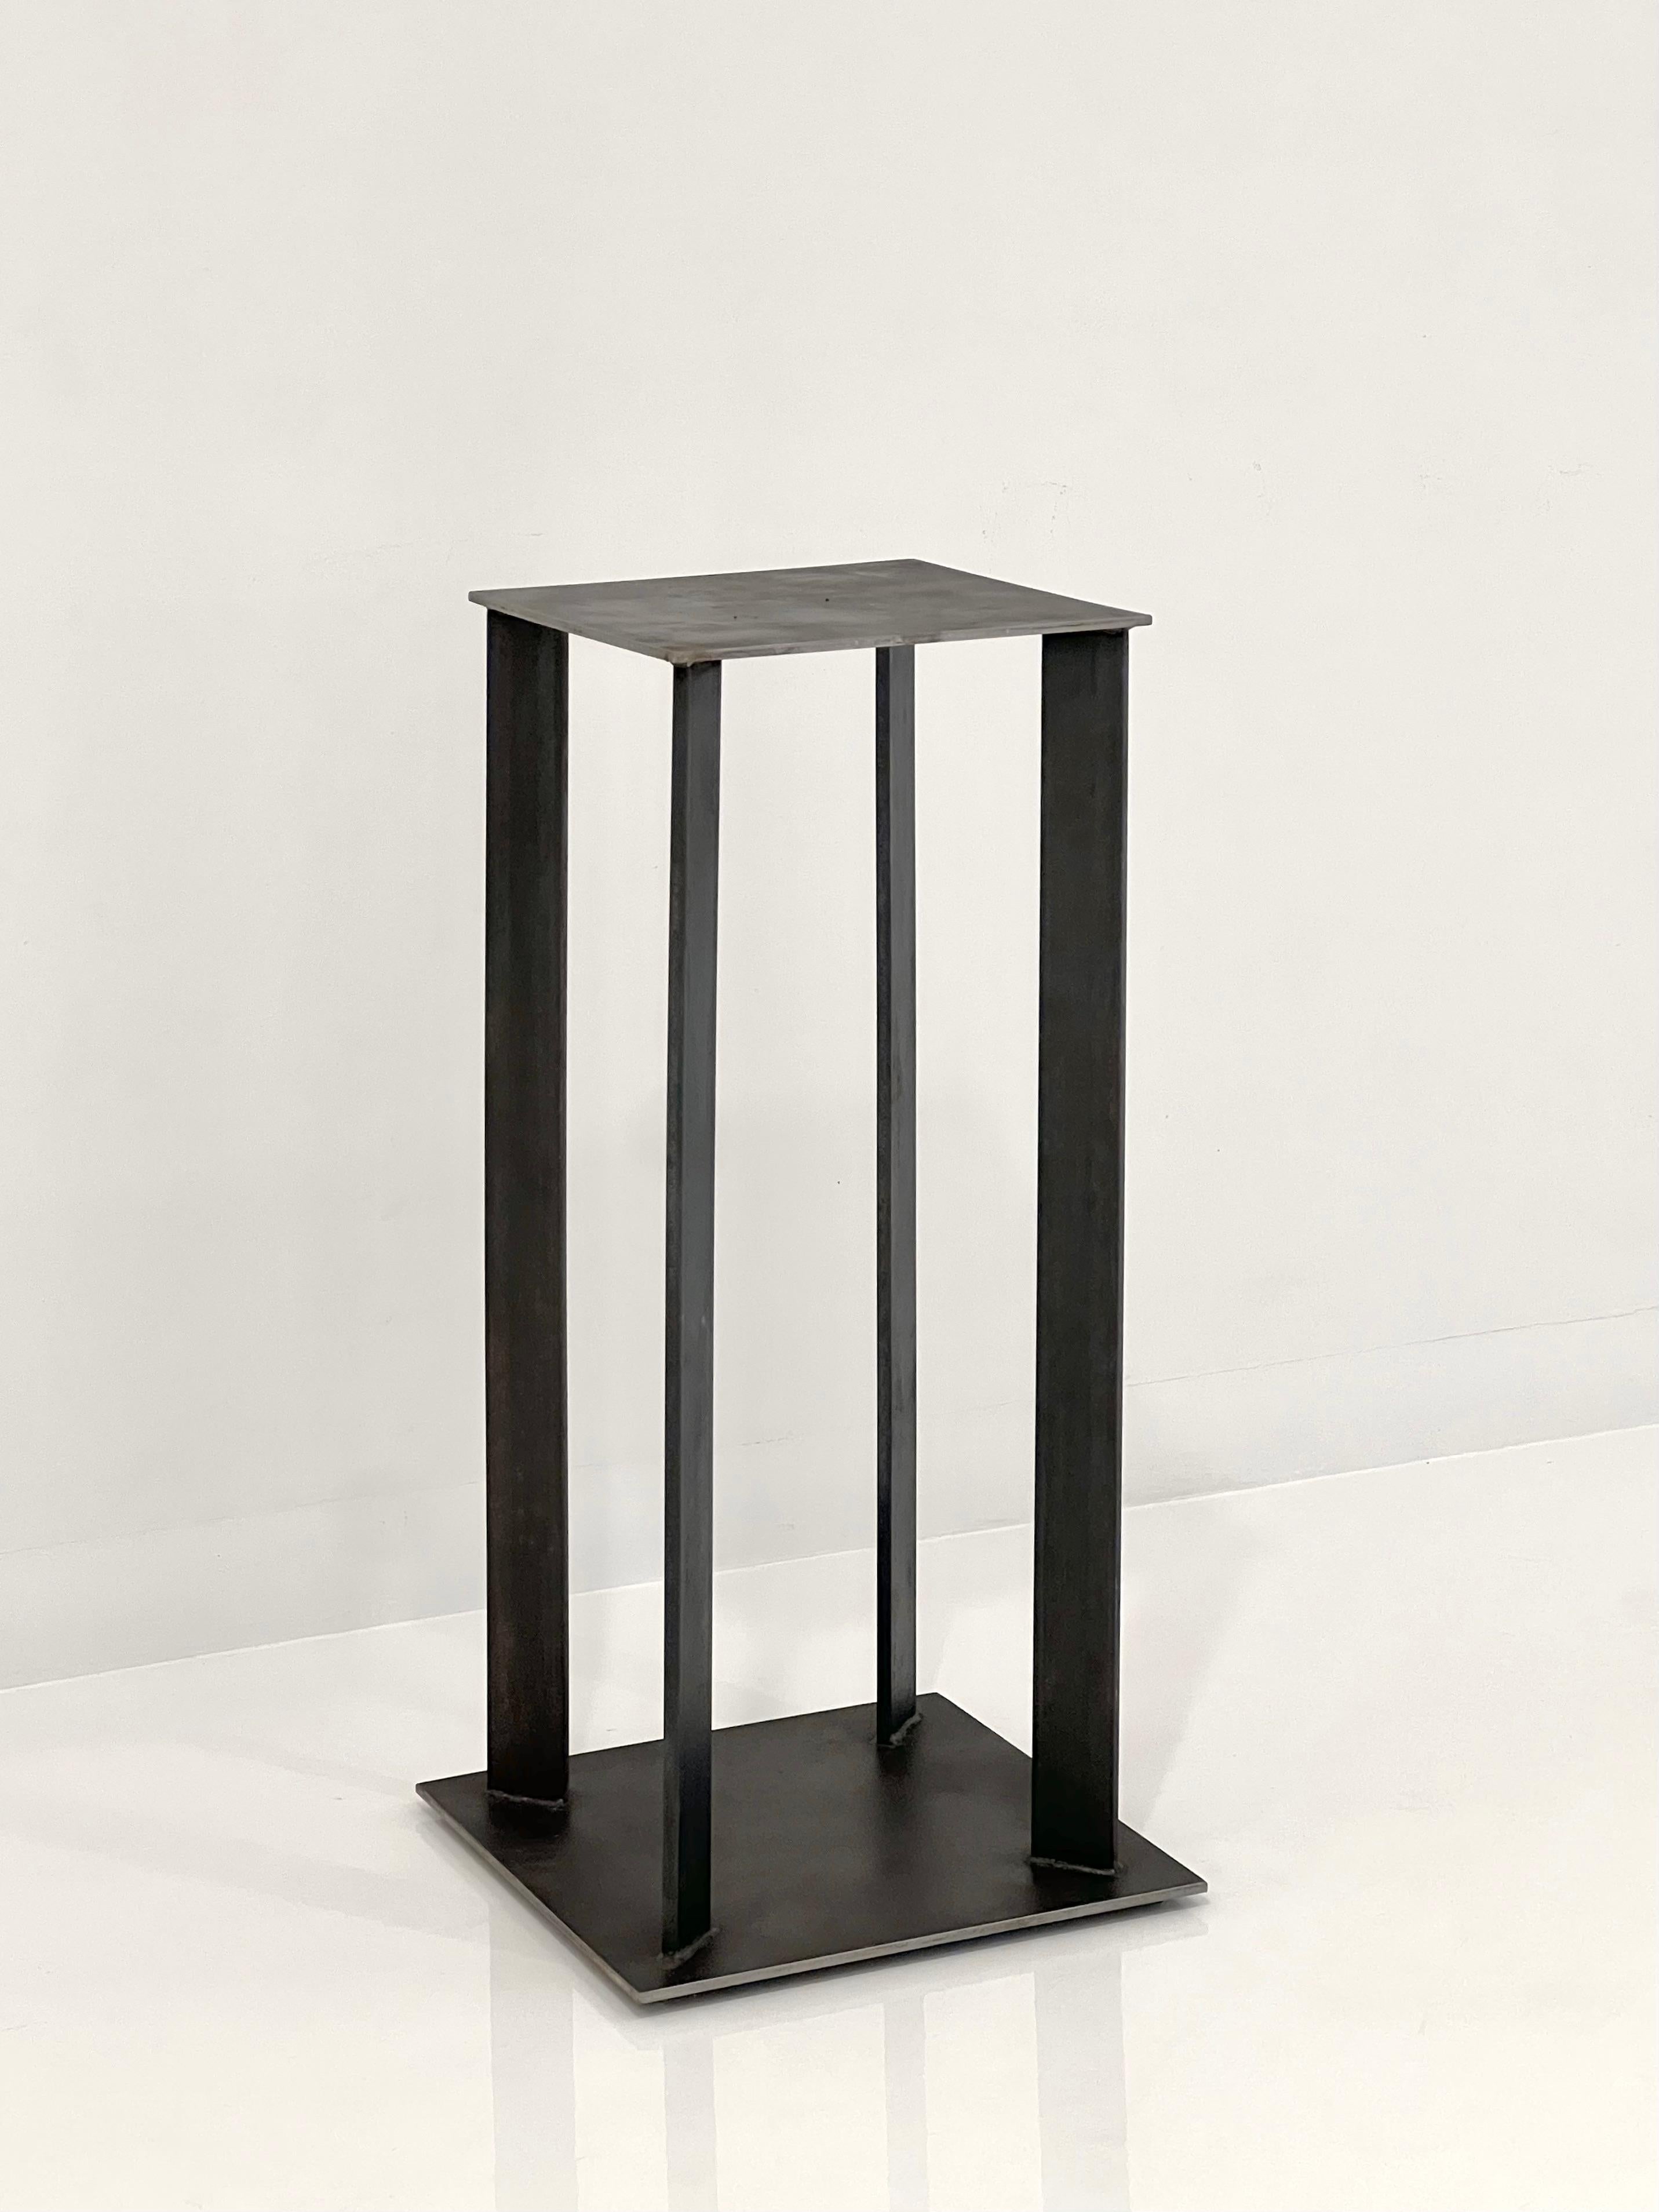 Un design simple parfait pour présenter des objets d'art du sculpteur contemporain de la région de New York, Robert Koch.